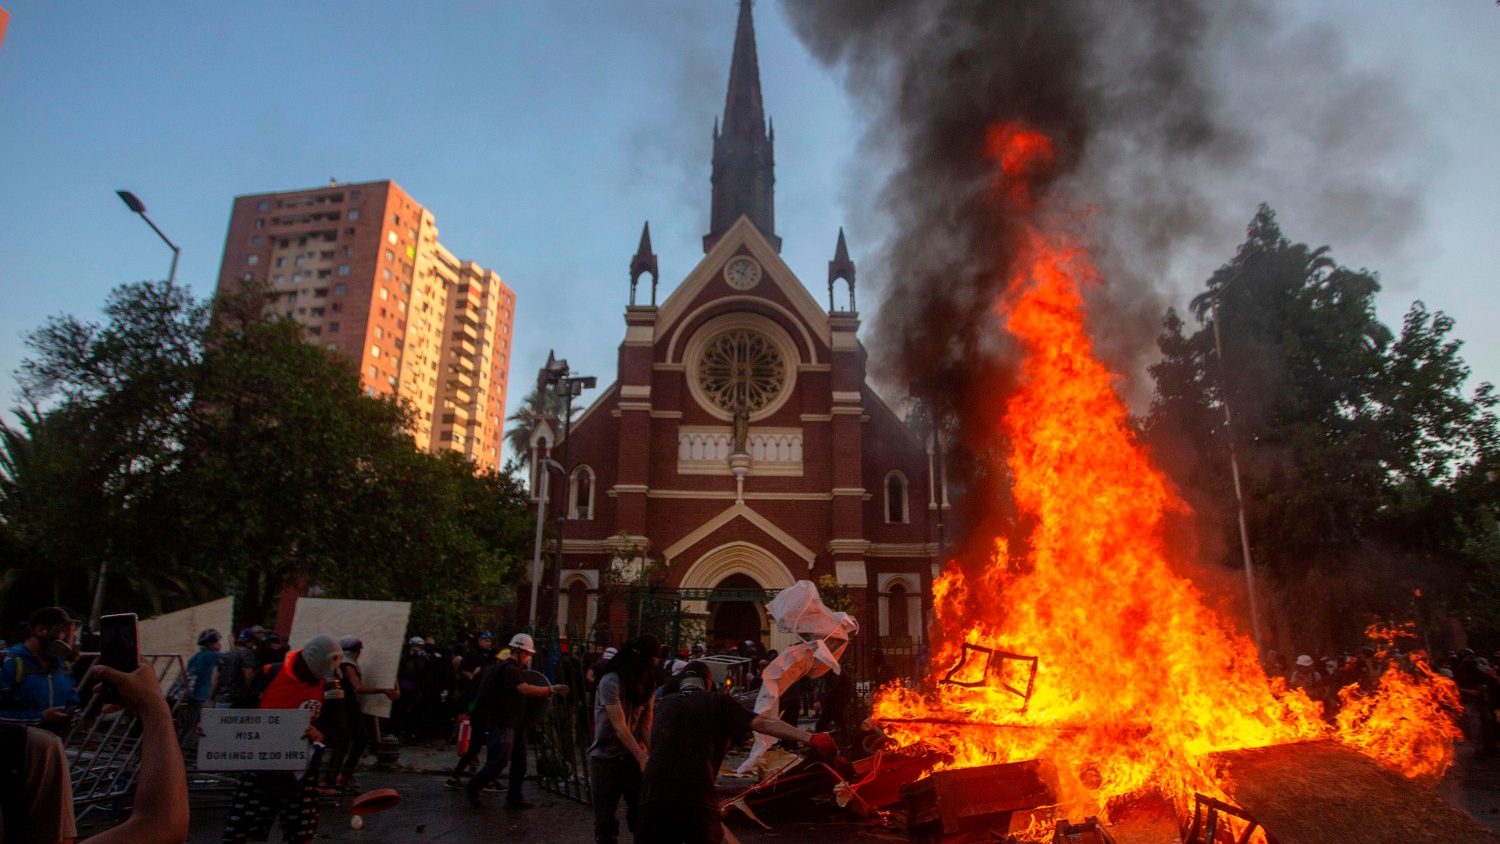 Église incendiée au Chili, le 3 janvier 2020 : «Ils ont brûlé le temple mais ils n’ont pas brûlé la foi» Cq5dam.thumbnail.cropped.1500.844